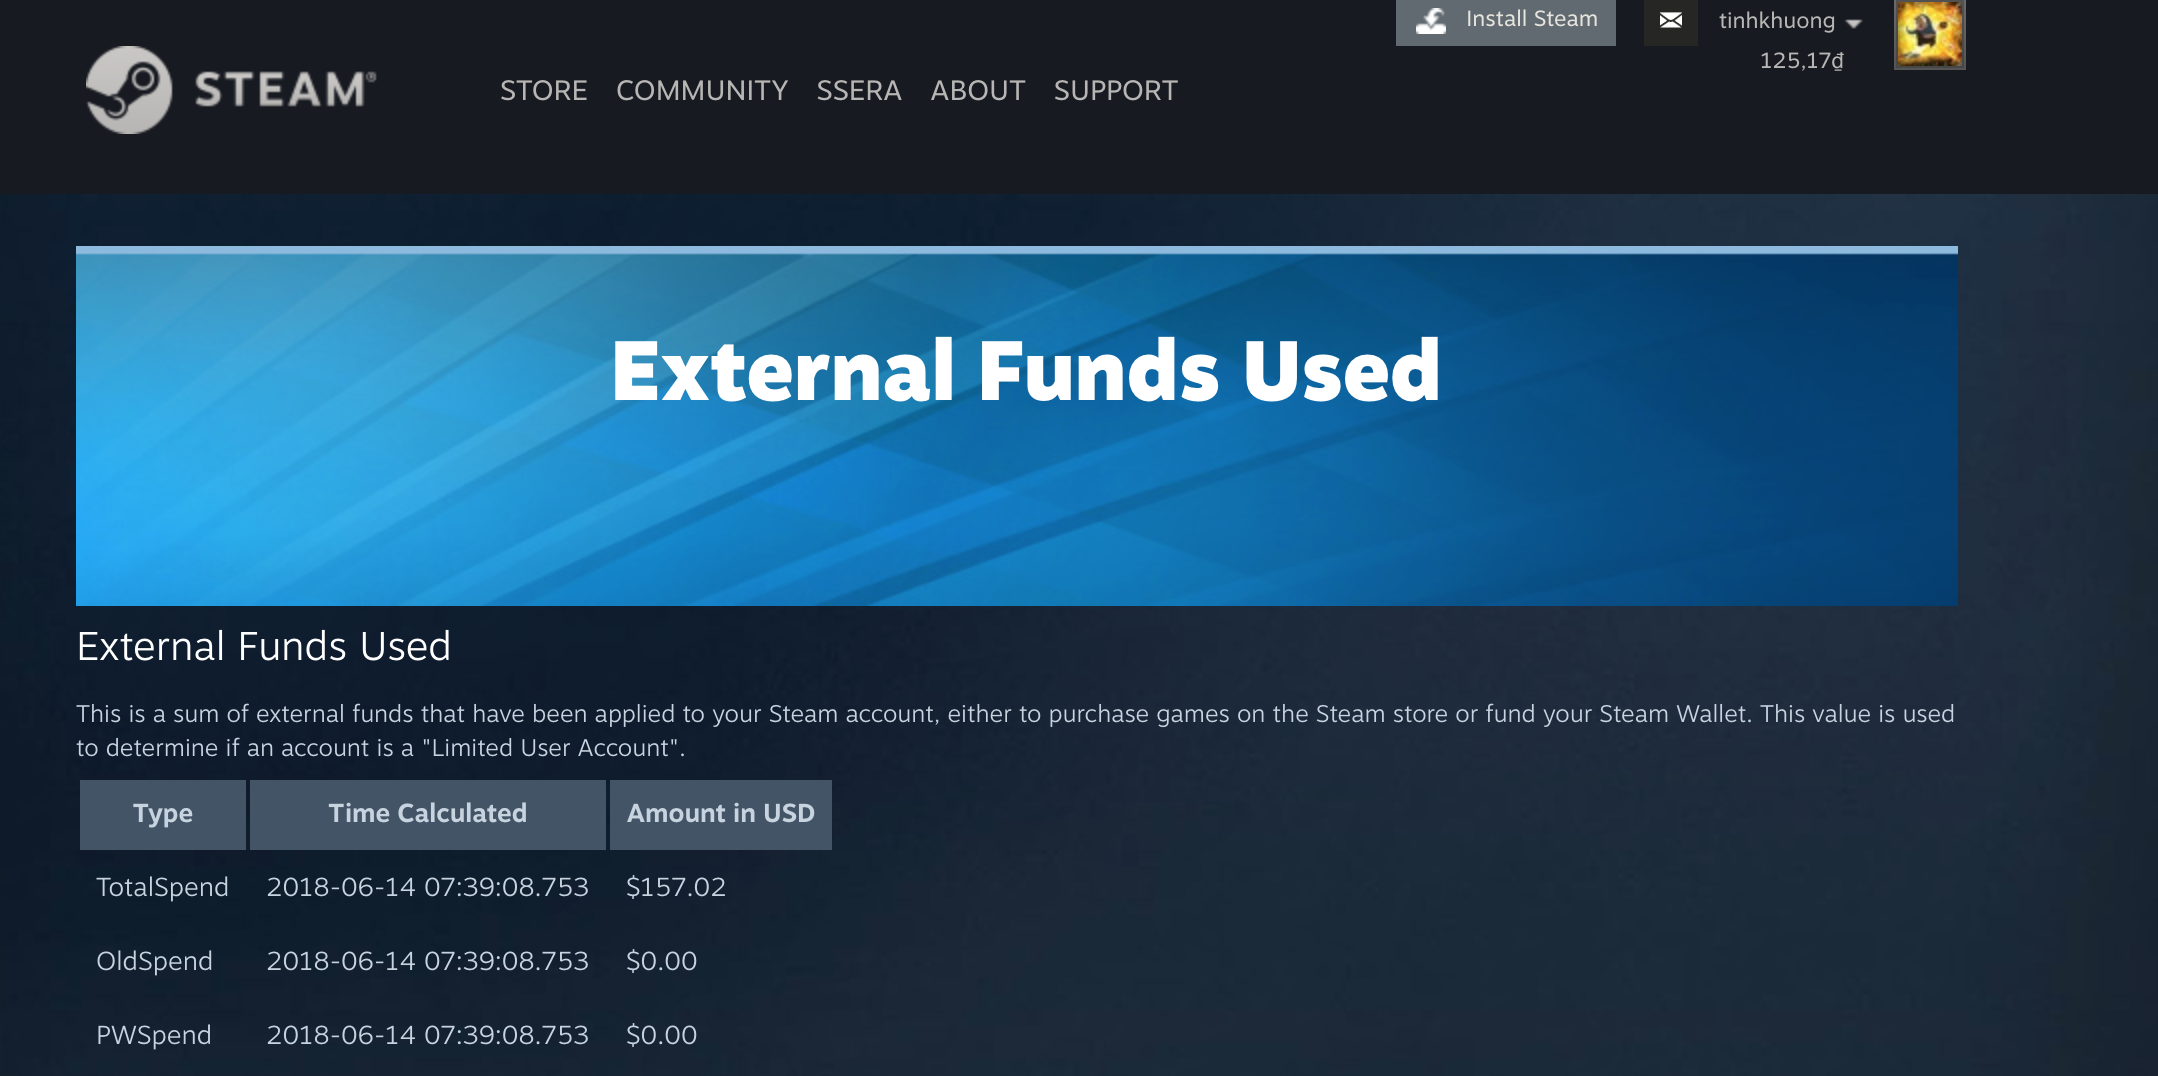 Steam cập nhật trang cho phép bạn kiểm tra đã chi bao nhiêu tiền cho các tựa game